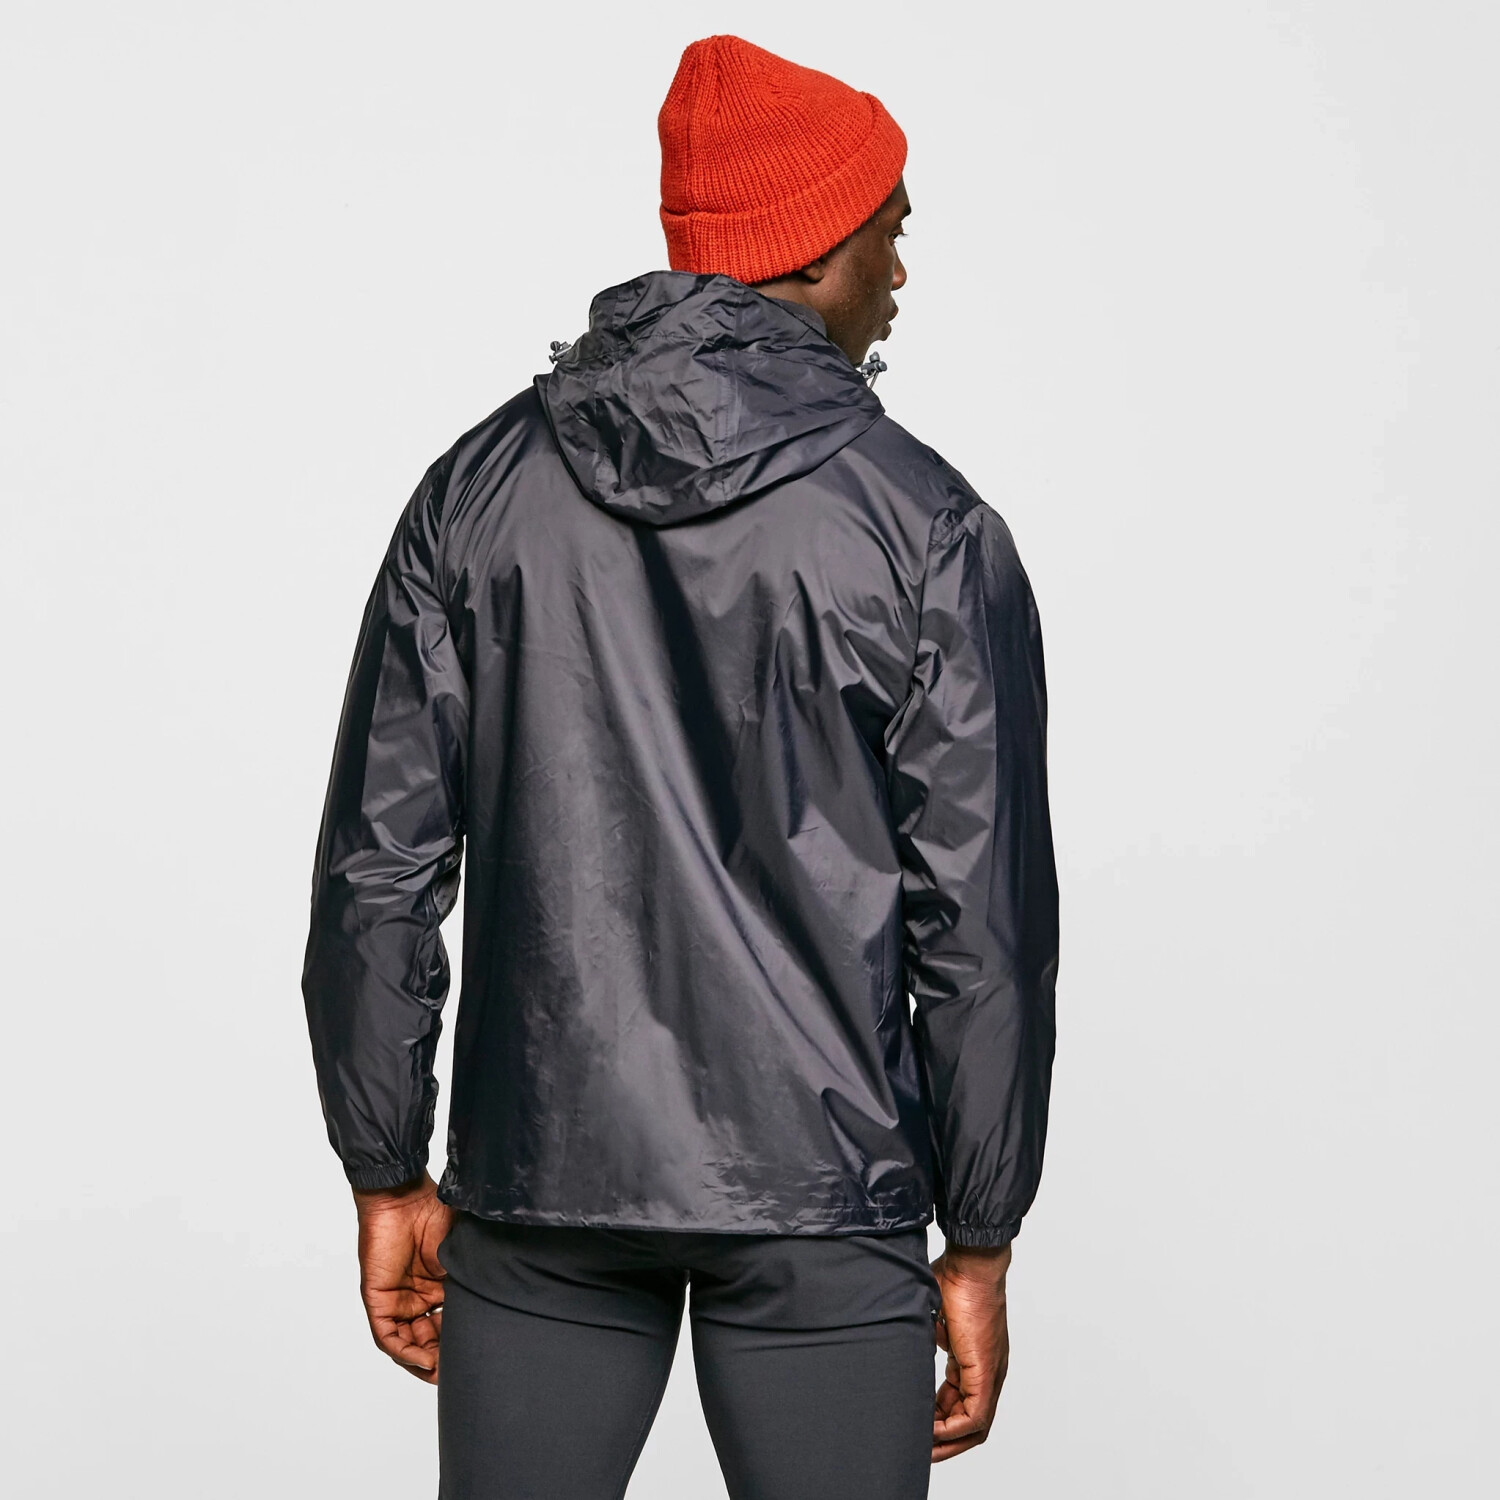 Buy Peter Storm Men's Packable Jacket Black from £22.00 (Today) – Best  Deals on